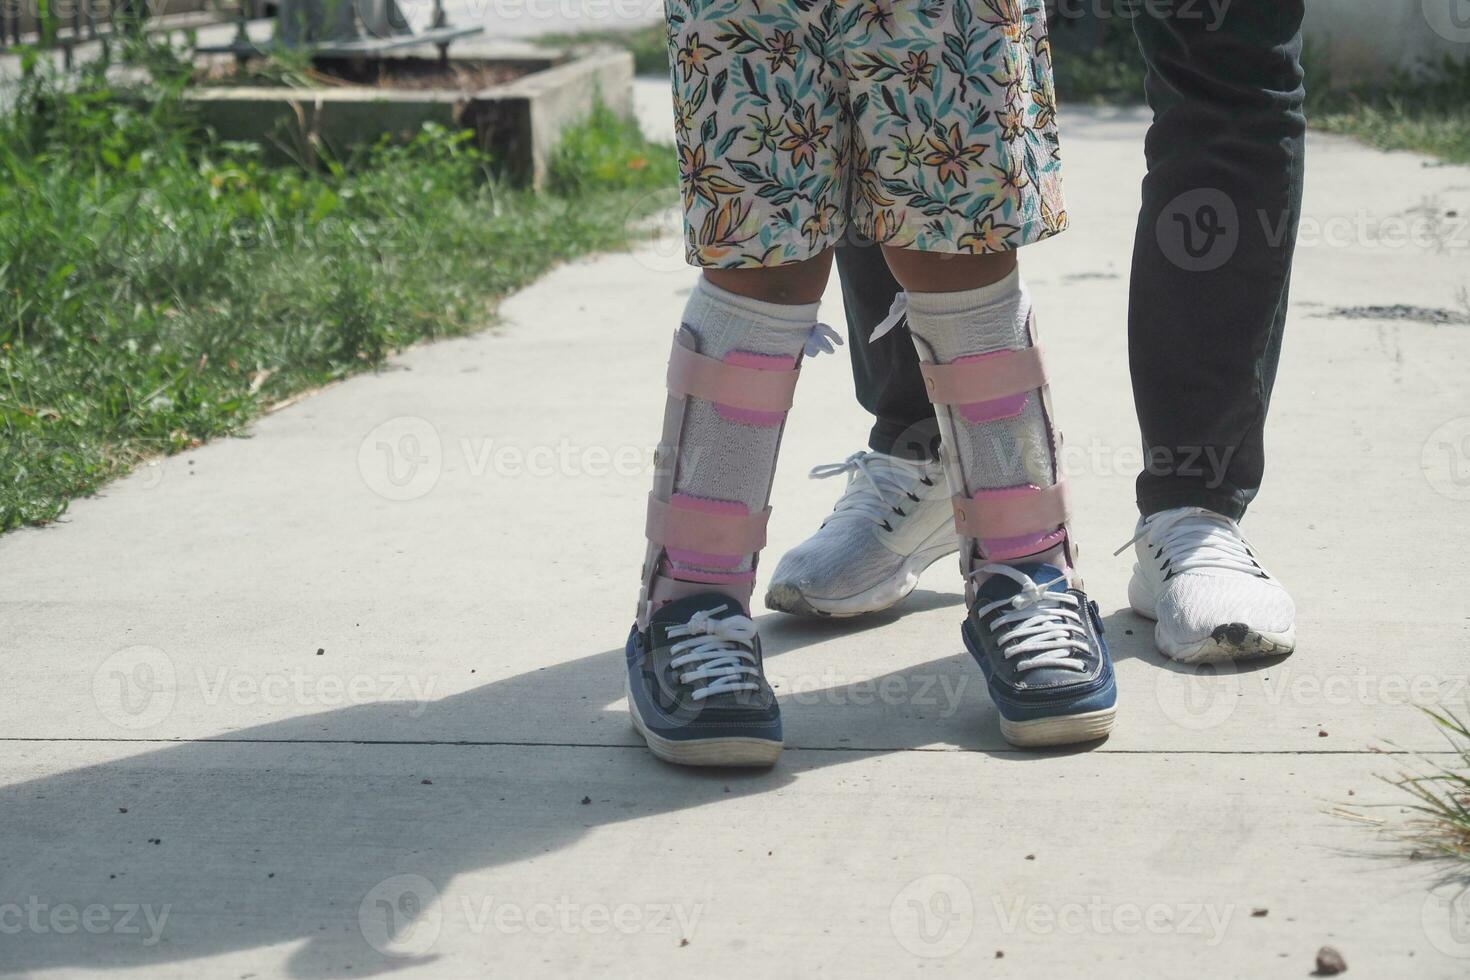 niño cerebral parálisis invalidez con piernas ortesis caminando al aire libre foto